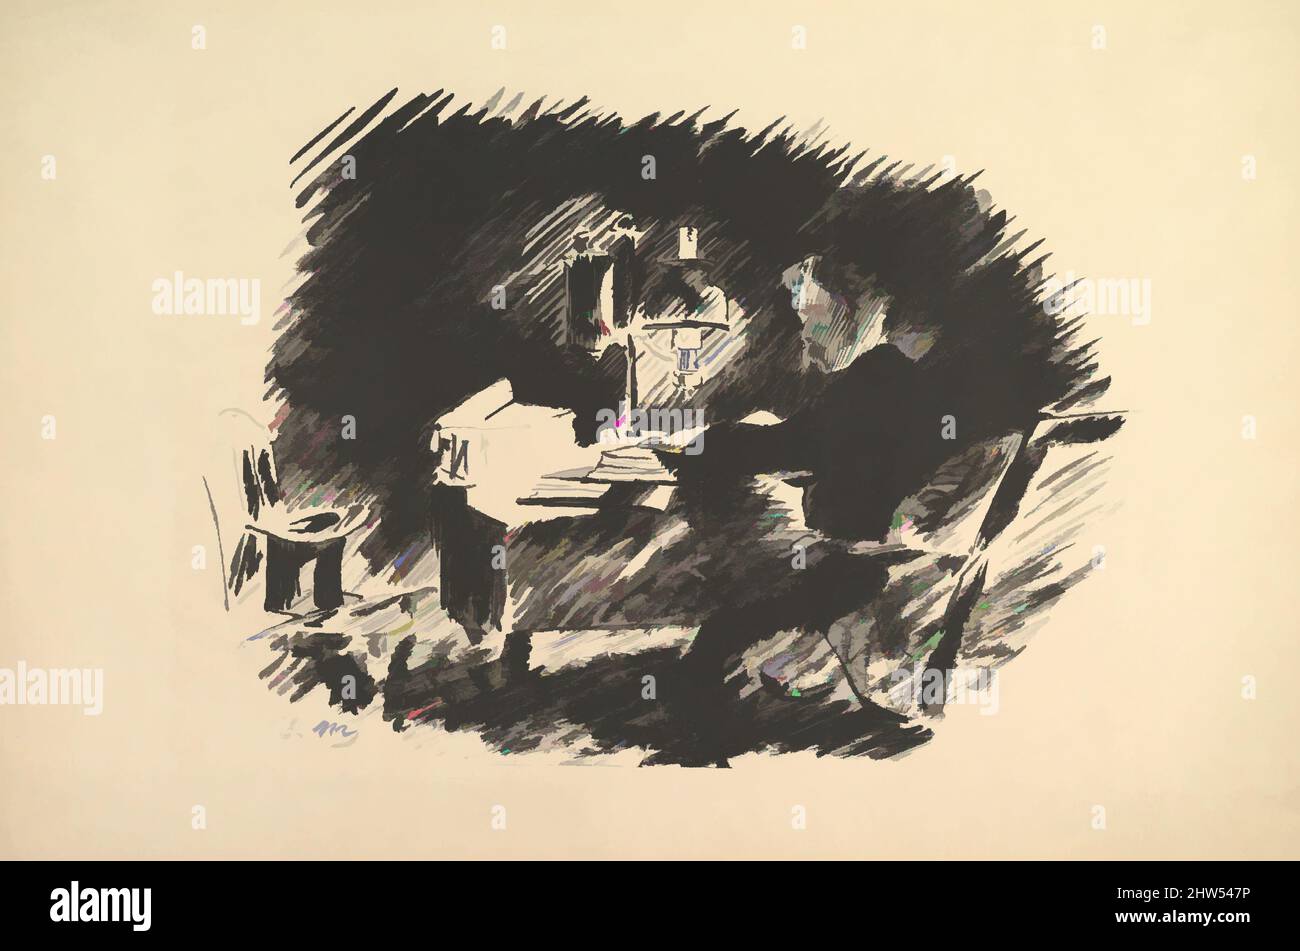 Kunst inspiriert von Once Upon a Midnight Dreary. Illustration to the Raven von Edgar Allan Poe, 1875, Lithograph auf gedeckten Papier, Blatt: 13 3/4 x 21 1/16 Zoll (35 x 53,5 cm), Drucke, Édouard Manet (Französisch, Paris 1832–1883 Paris, Klassische Werke, die von Artotop mit einem Schuss Moderne modernisiert wurden. Formen, Farbe und Wert, auffällige visuelle Wirkung auf Kunst. Emotionen durch Freiheit von Kunstwerken auf zeitgemäße Weise. Eine zeitlose Botschaft, die eine wild kreative neue Richtung verfolgt. Künstler, die sich dem digitalen Medium zuwenden und die Artotop NFT erschaffen Stockfoto